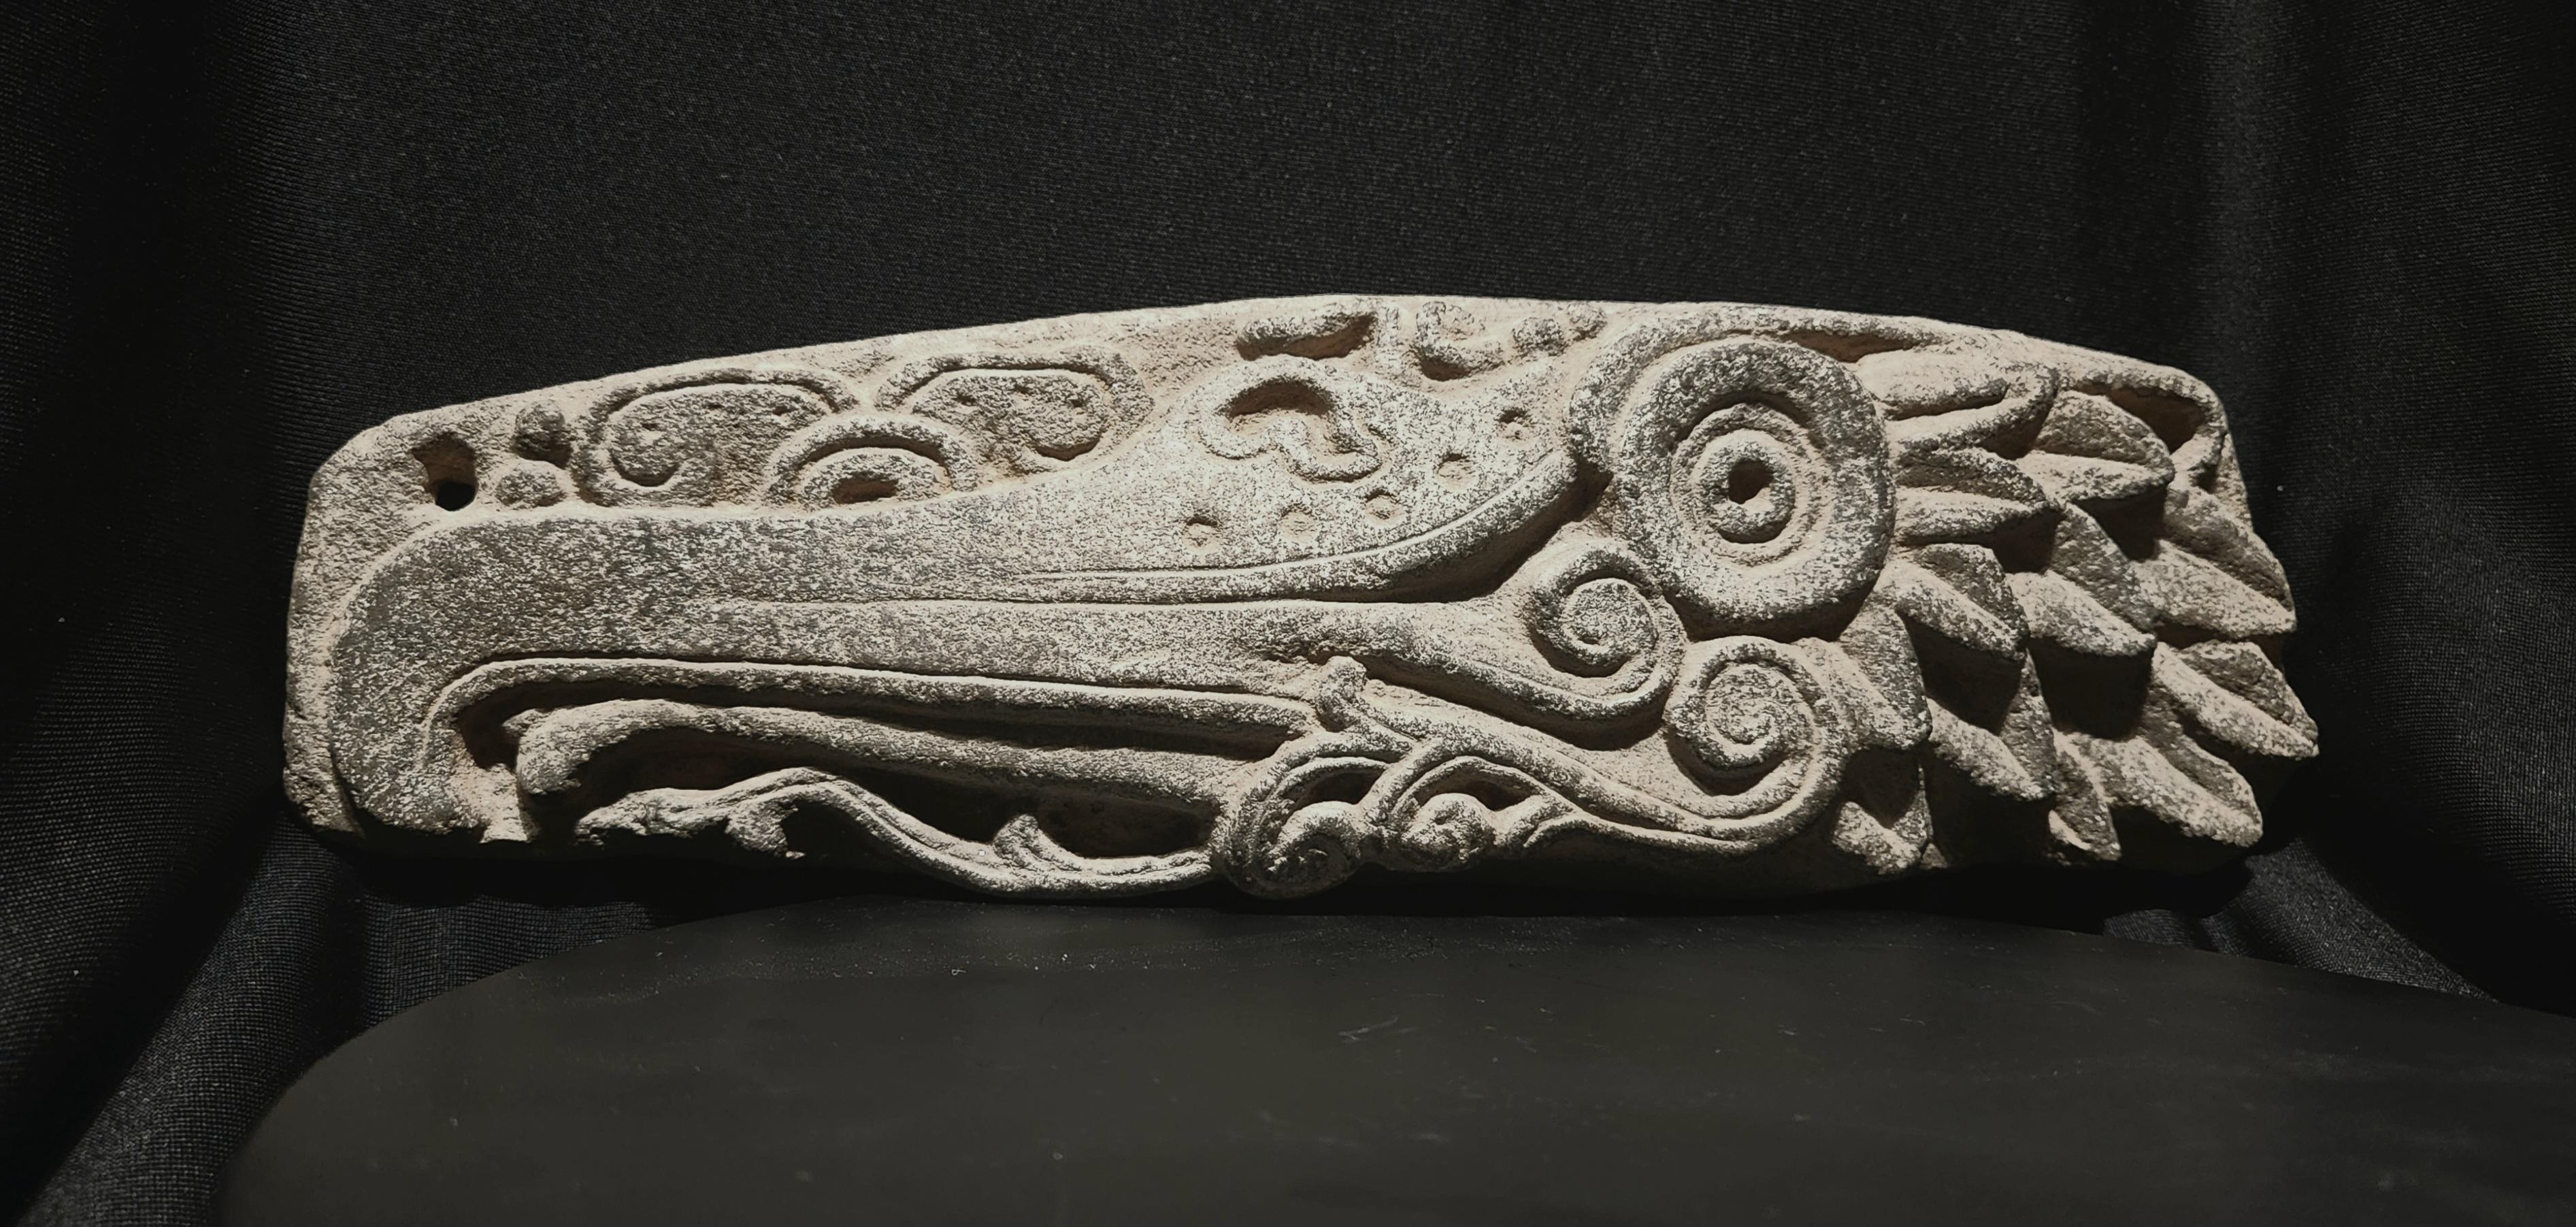 Diese prächtige Tafel ist ein Beispiel für den Höhepunkt der Maya-Steinmetzkunst.
Es  stellt den Kopf eines Kormorans im Profil dar, mit langem, hakenförmigem Schnabel, gebogener Zunge, großem zentralen Auge, spiralförmigen Wasserelementen darunter